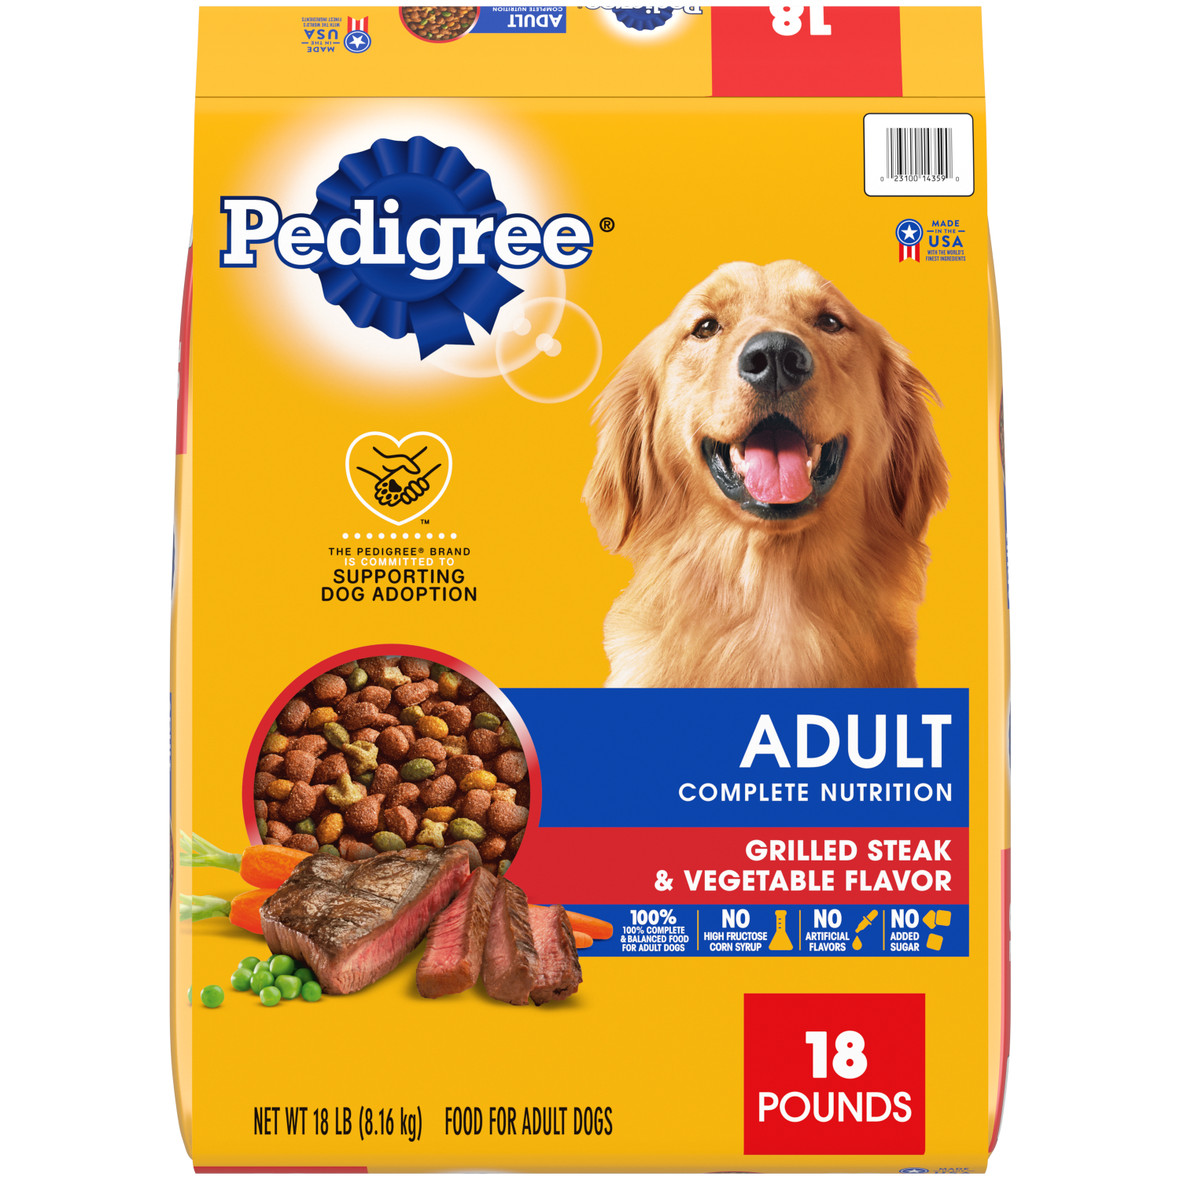 Pedigree Complete Nutrition Grilled Steak & Vegetable Dry Dog Food for Adult Dog, 18 pounds